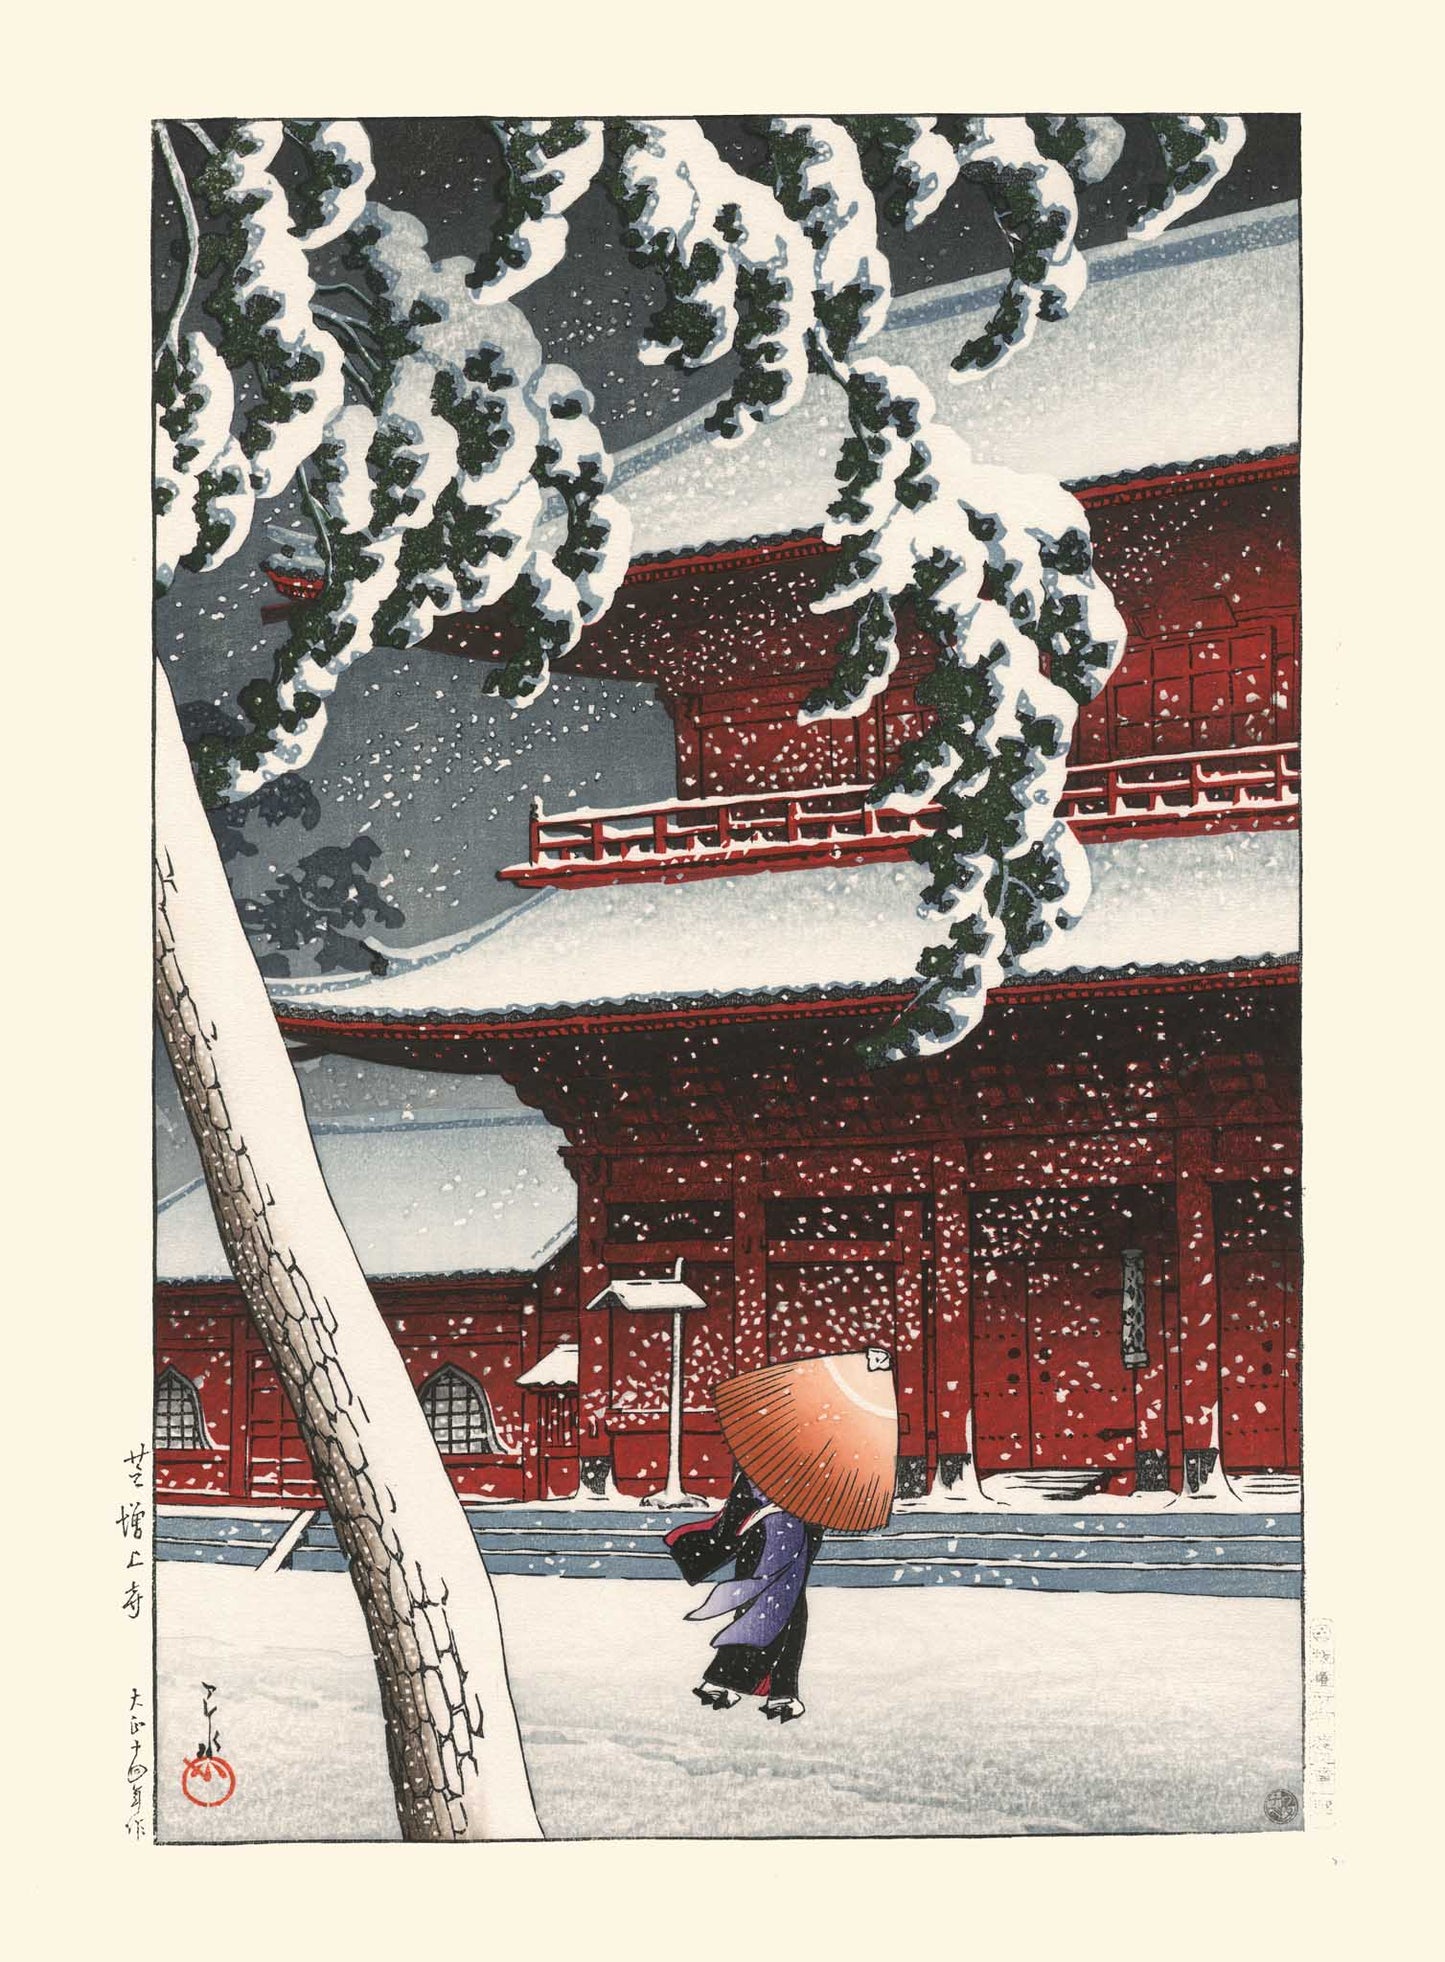 Estampe Japonaise d'un personne sous la tempête de neige sous son parapluie, devant le temple zozojpi rouge en hiver